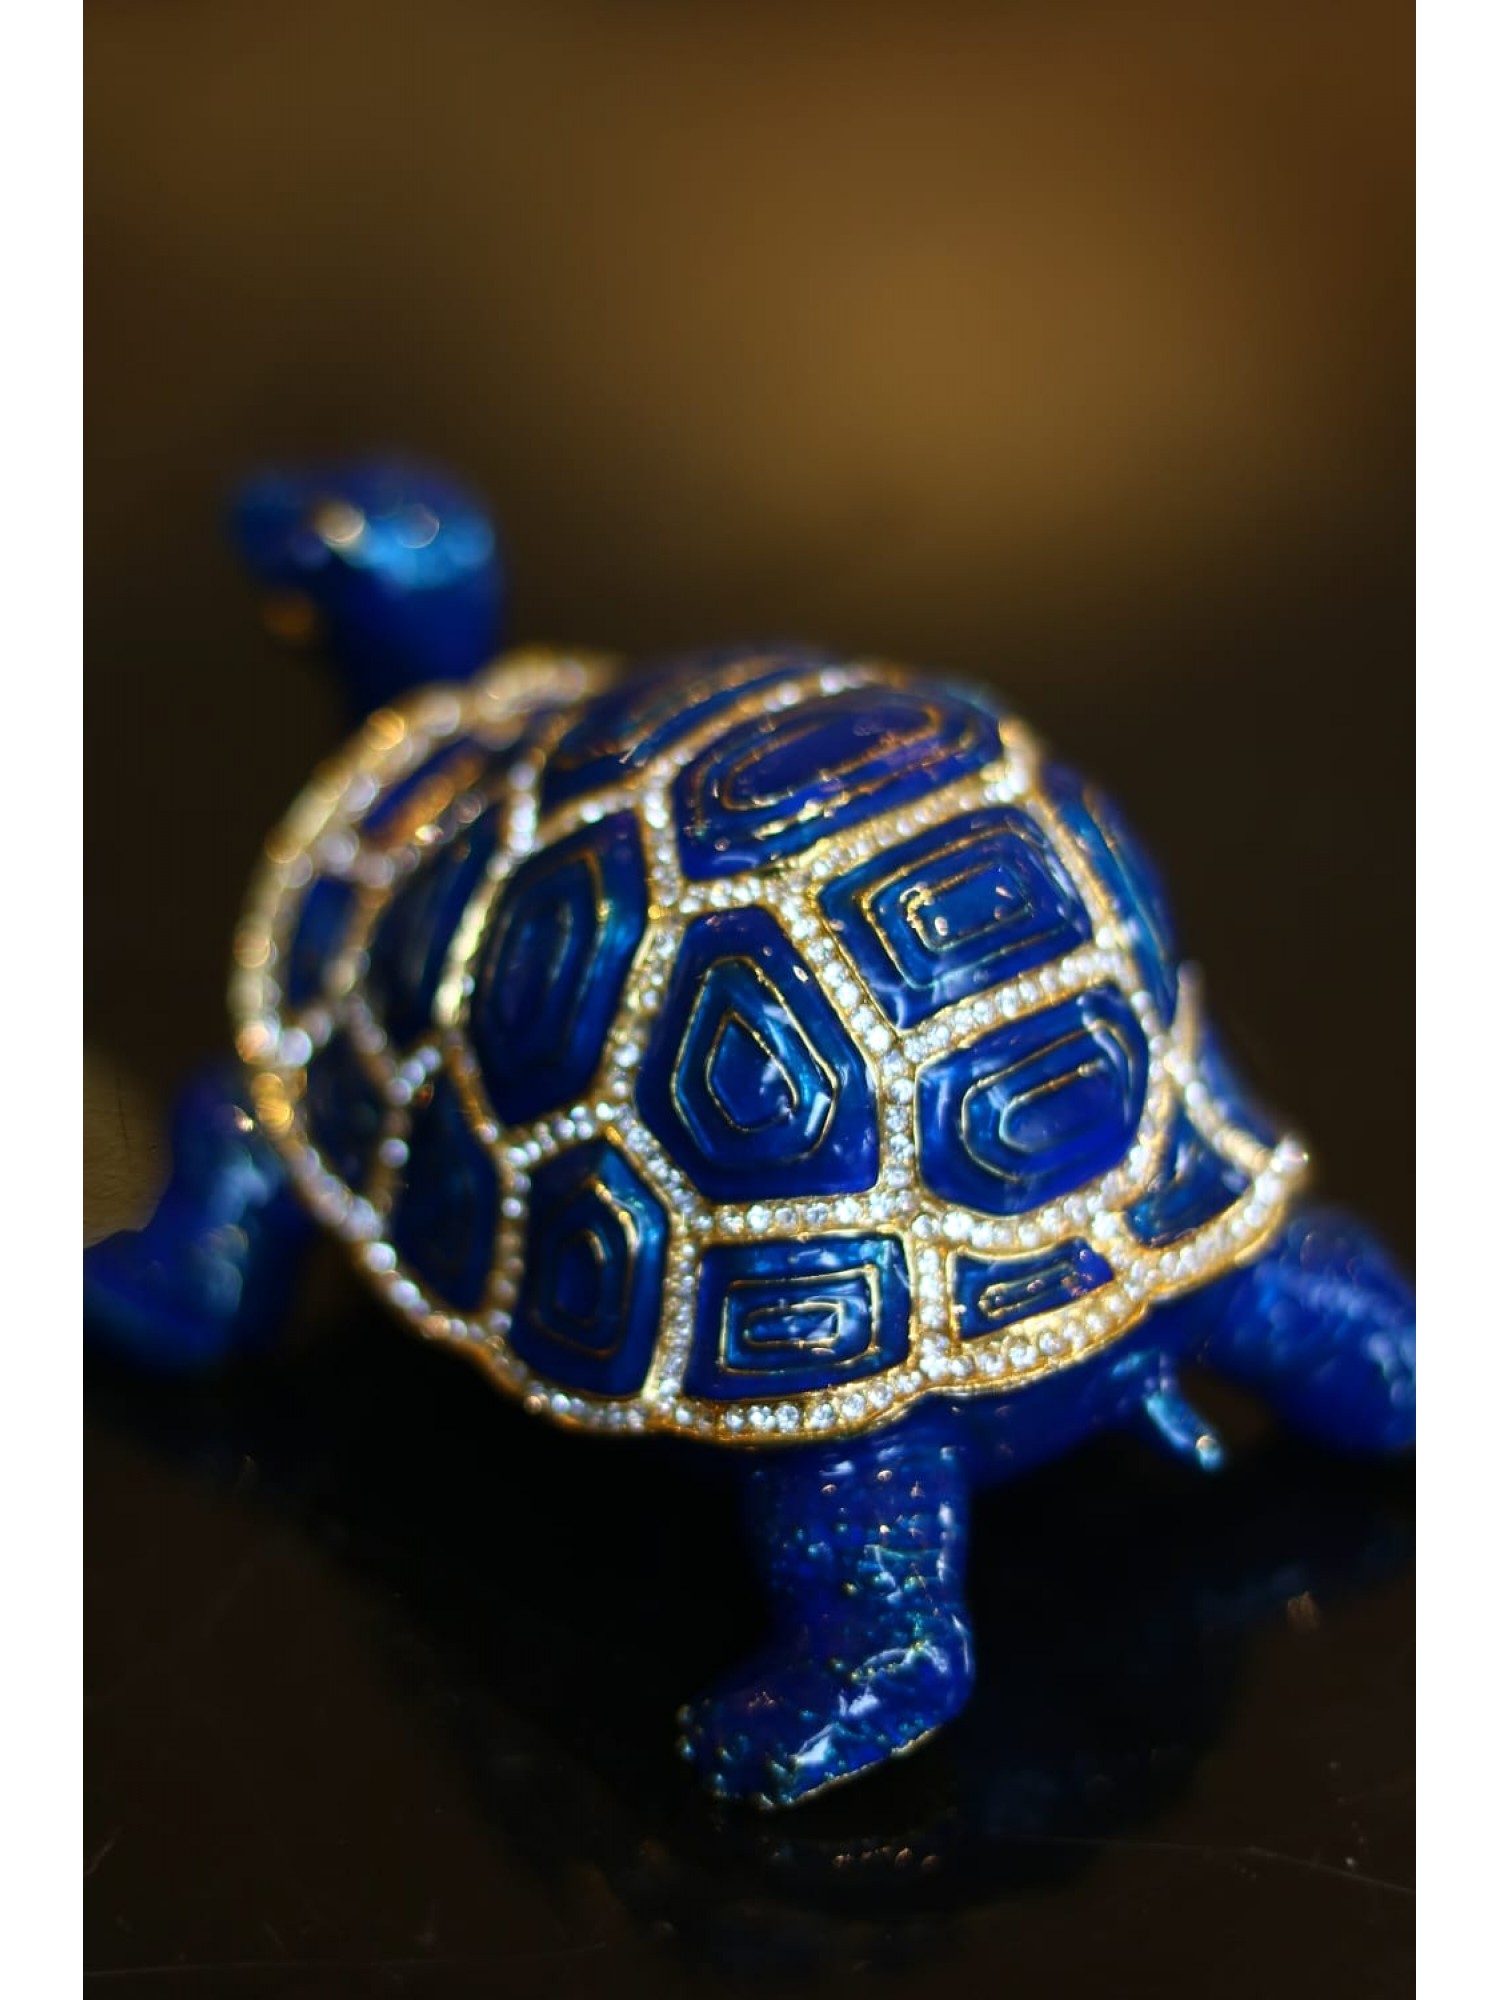 Статуэтка "Черепаха" синяя (со стразами)